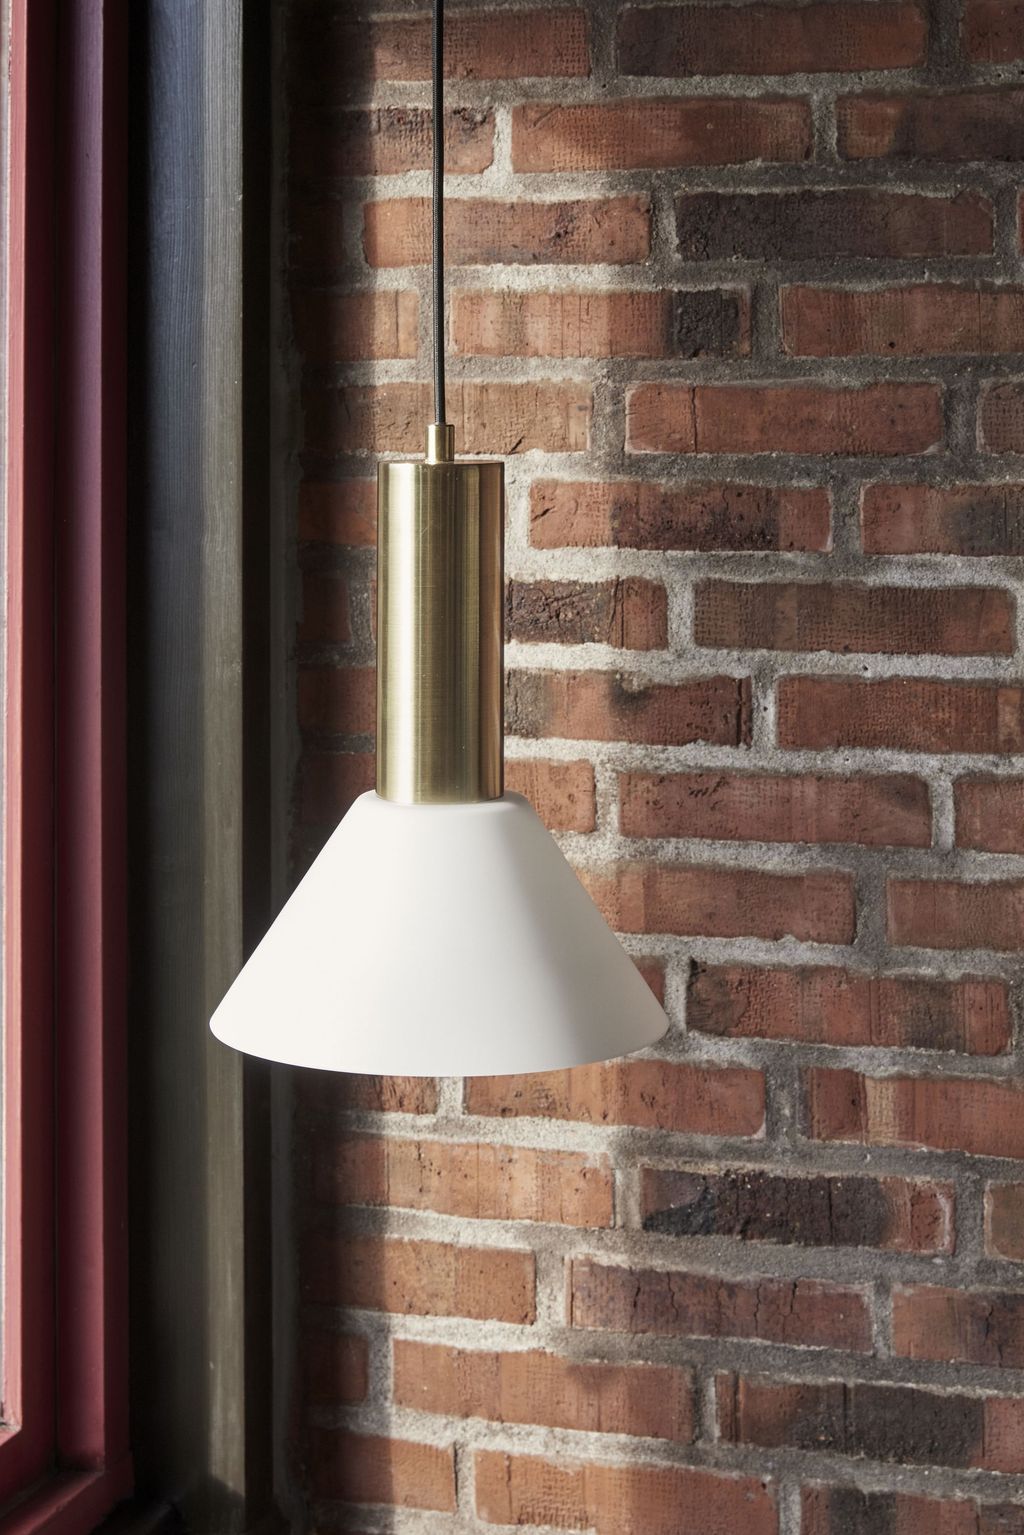 Hübsch Contrast Loftslampe/Pendel, Bruneret Messing/Hvid